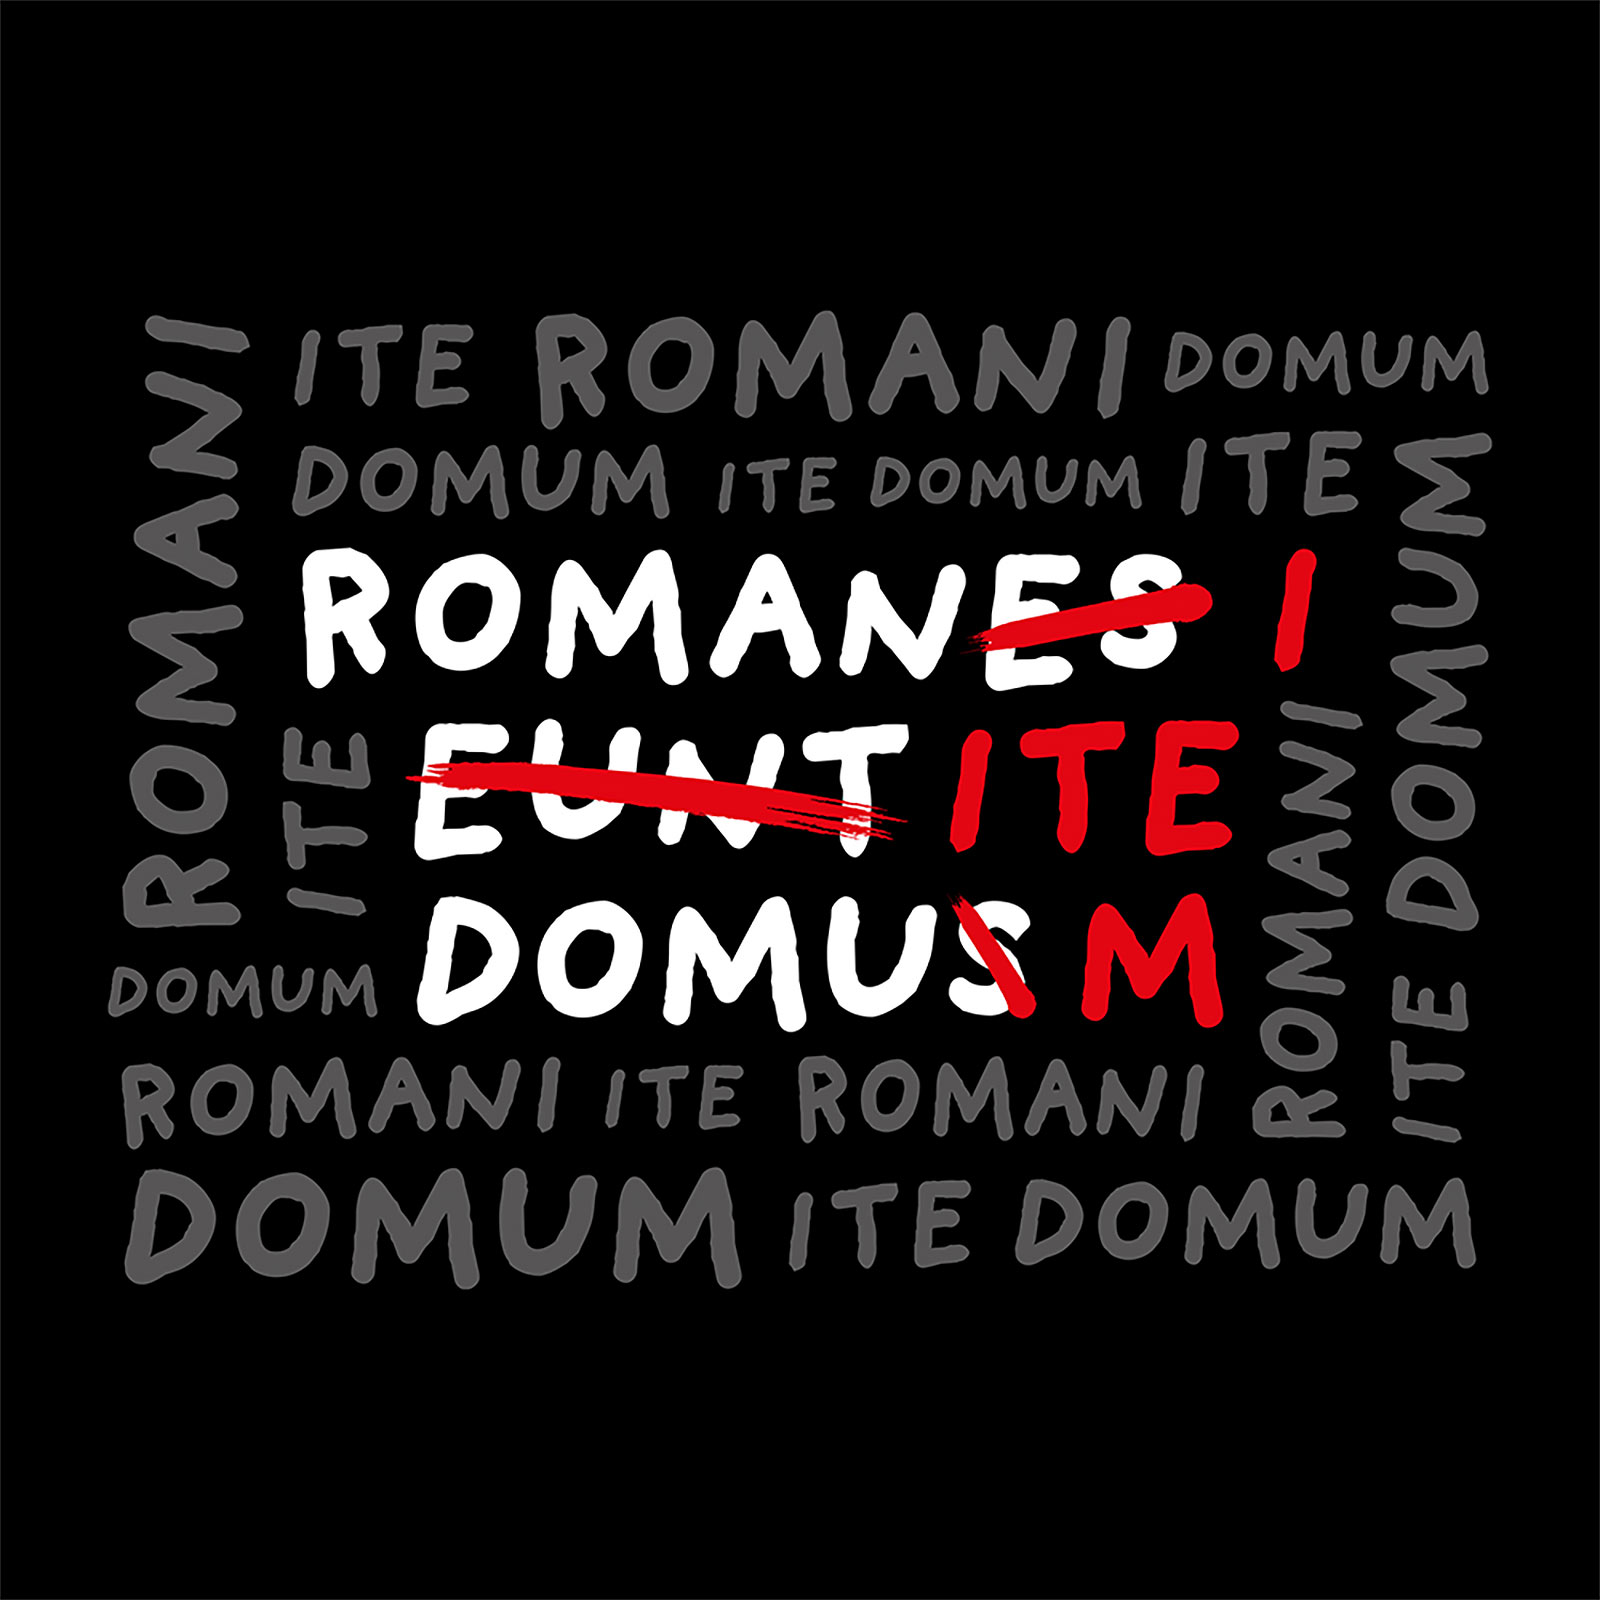 Romani Ite Domum T-Shirt für Monty Python Fans